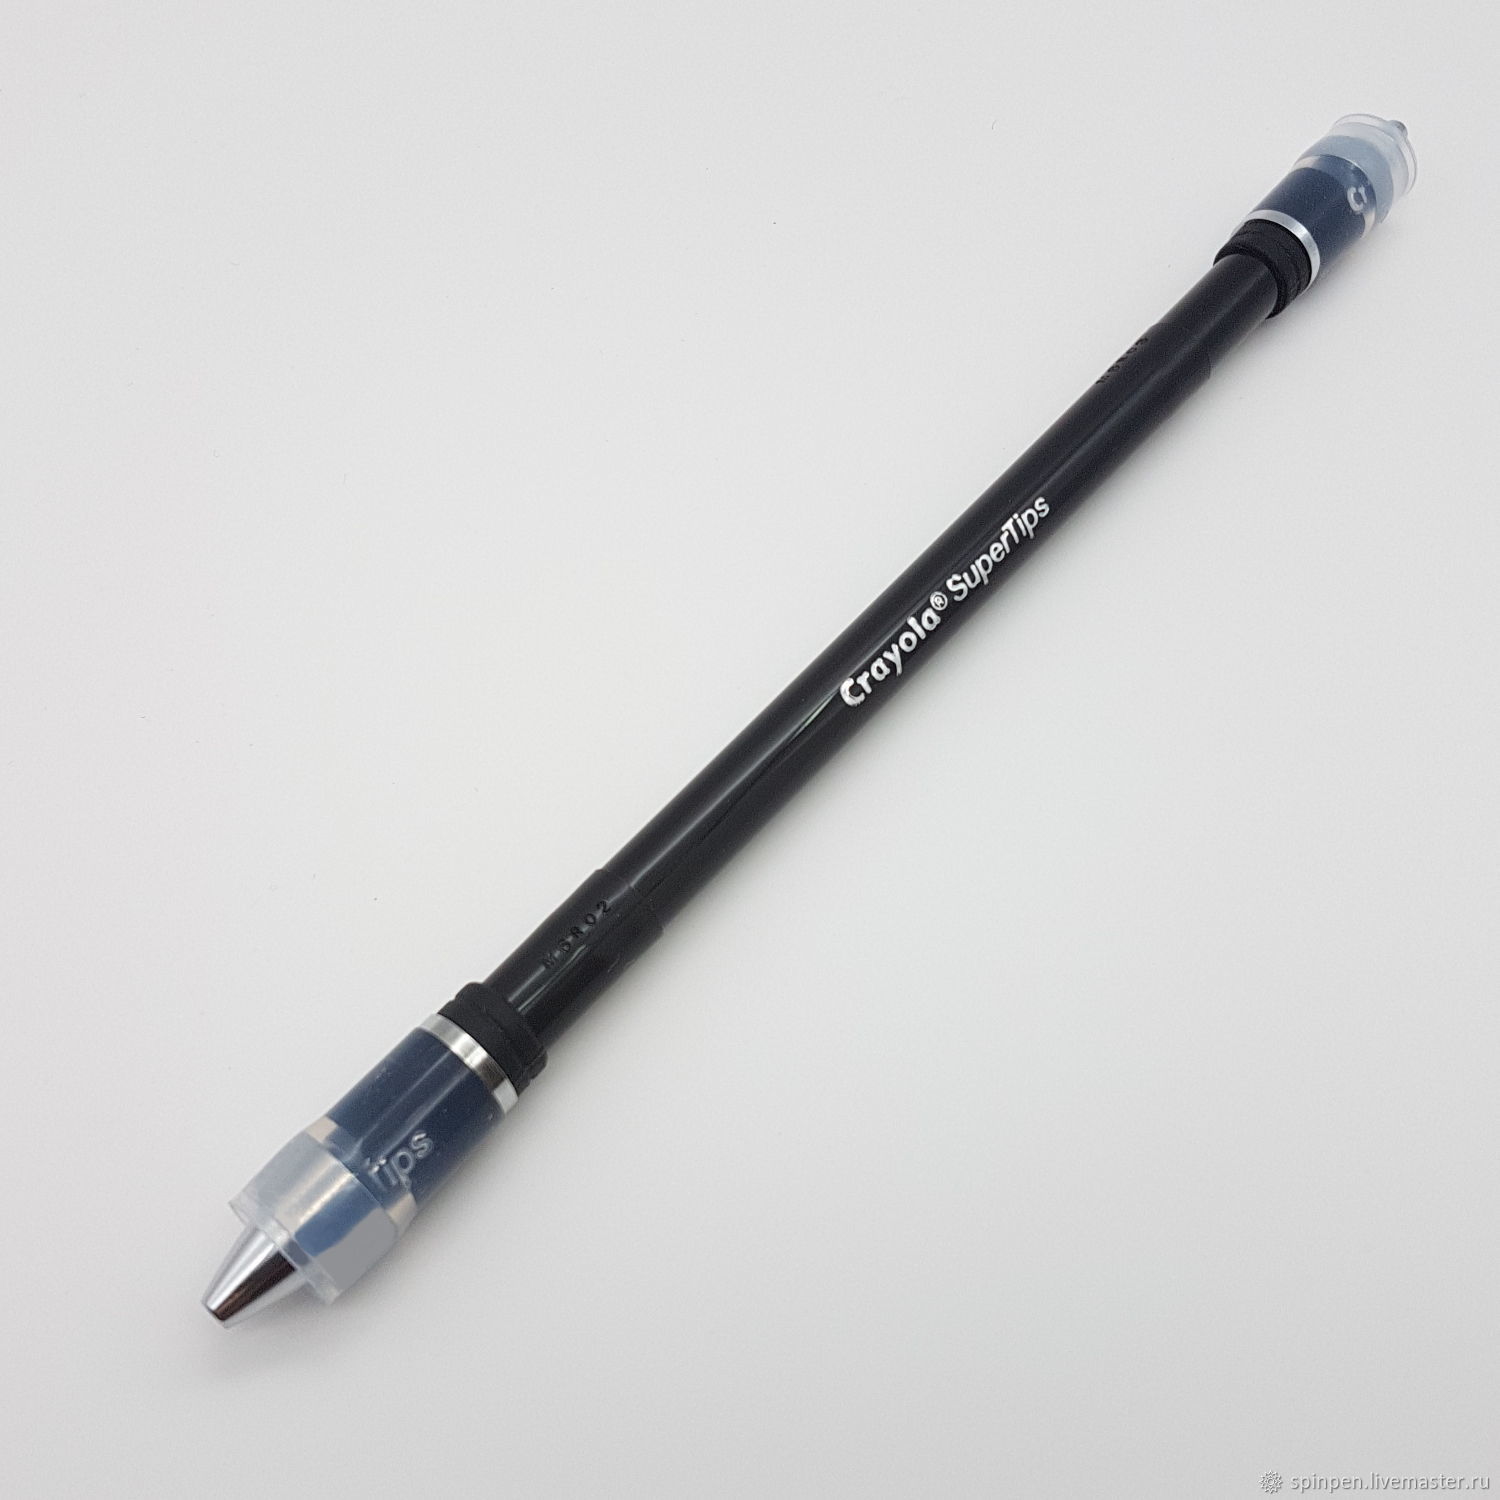 Spin pen. Ручка для пенспиннинга Ivan Mod. Ручка трюковая Pen Spinning. Buster Cyl мод пенспиннинг.